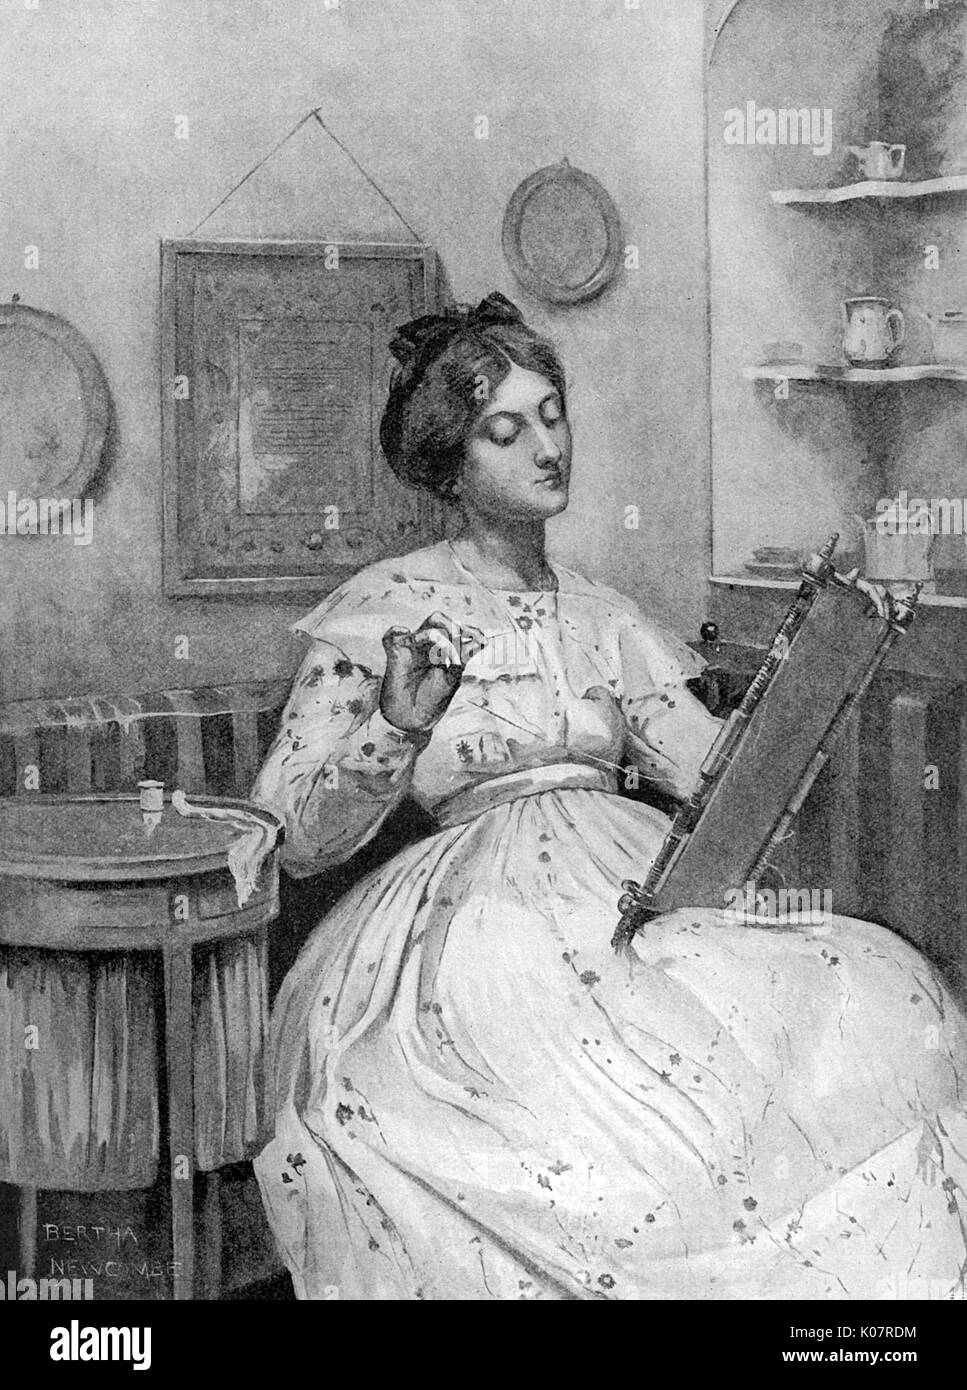 Eine junge Frau im viktorianischen Stil mit einem Stickrahmen, eine Nähmaschine, neben ihr und ein Beispiel für ihre Arbeit, die in Form von einem Sampler, an der Wand hinter ihr gesehen. Datum: 1905 Stockfoto